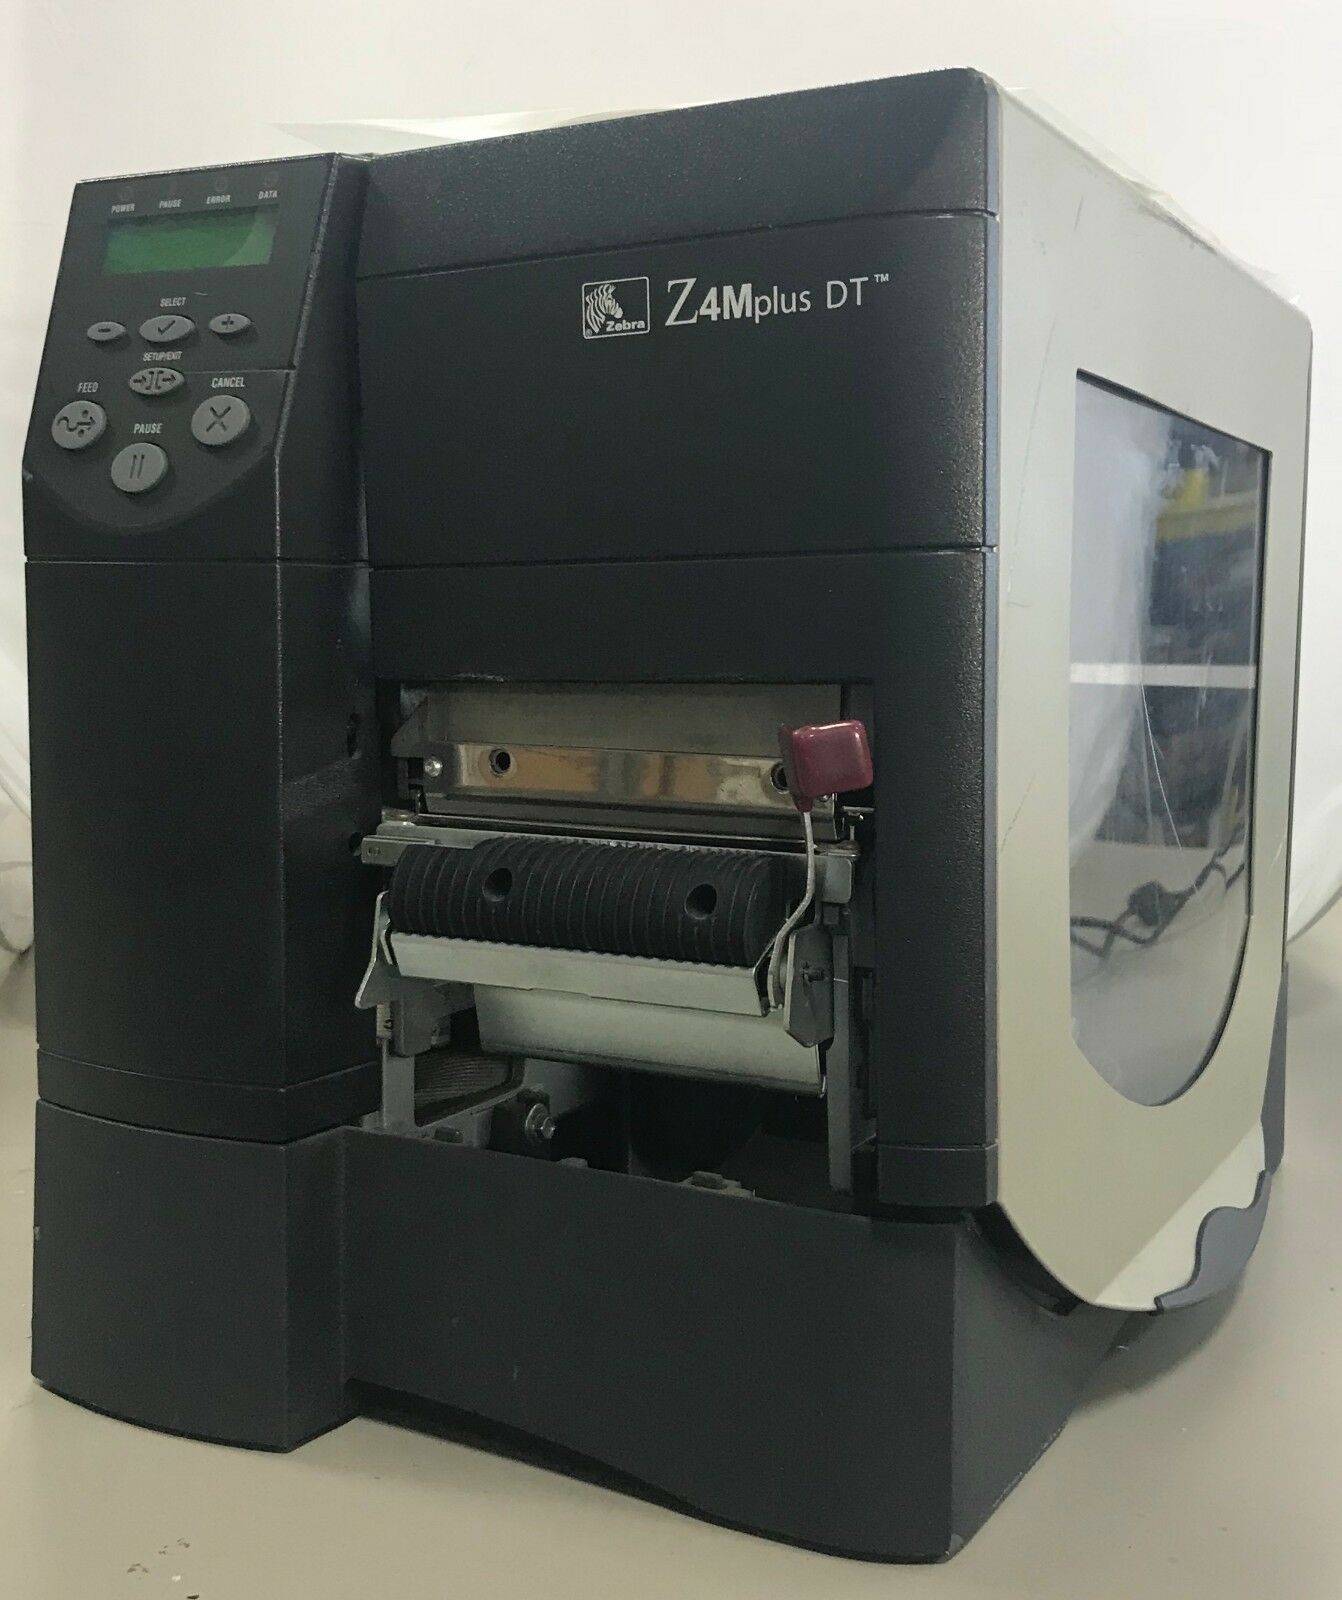 Zebra Z4mplus Dt Z4m2z 2001 4000 Direct Thermal Barcode Label Printer Usb Peeler Printers 2066